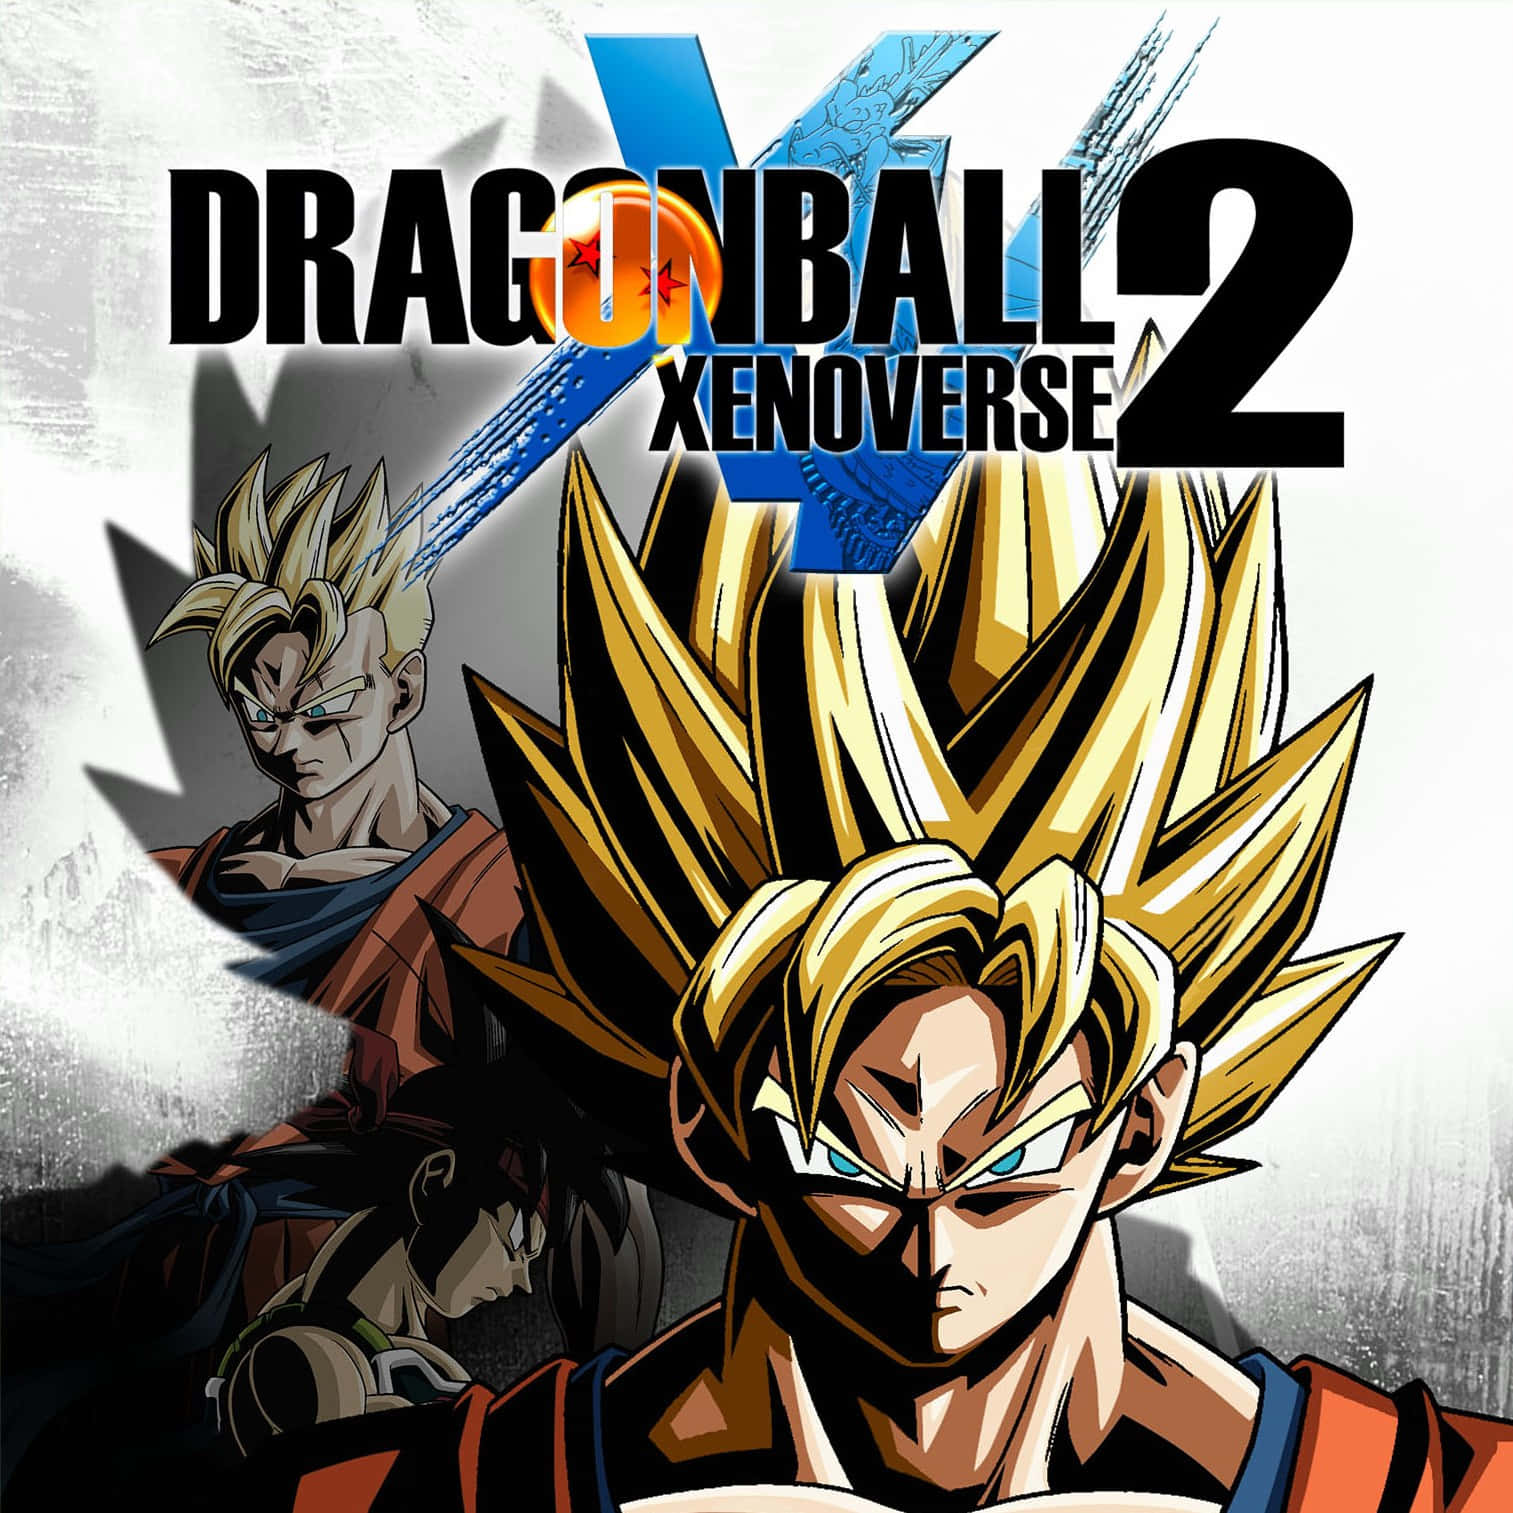 ¡séel Héroe De La Historia Y Protege La Línea De Tiempo De Dragon Ball En Dragon Ball Xenoverse 2!